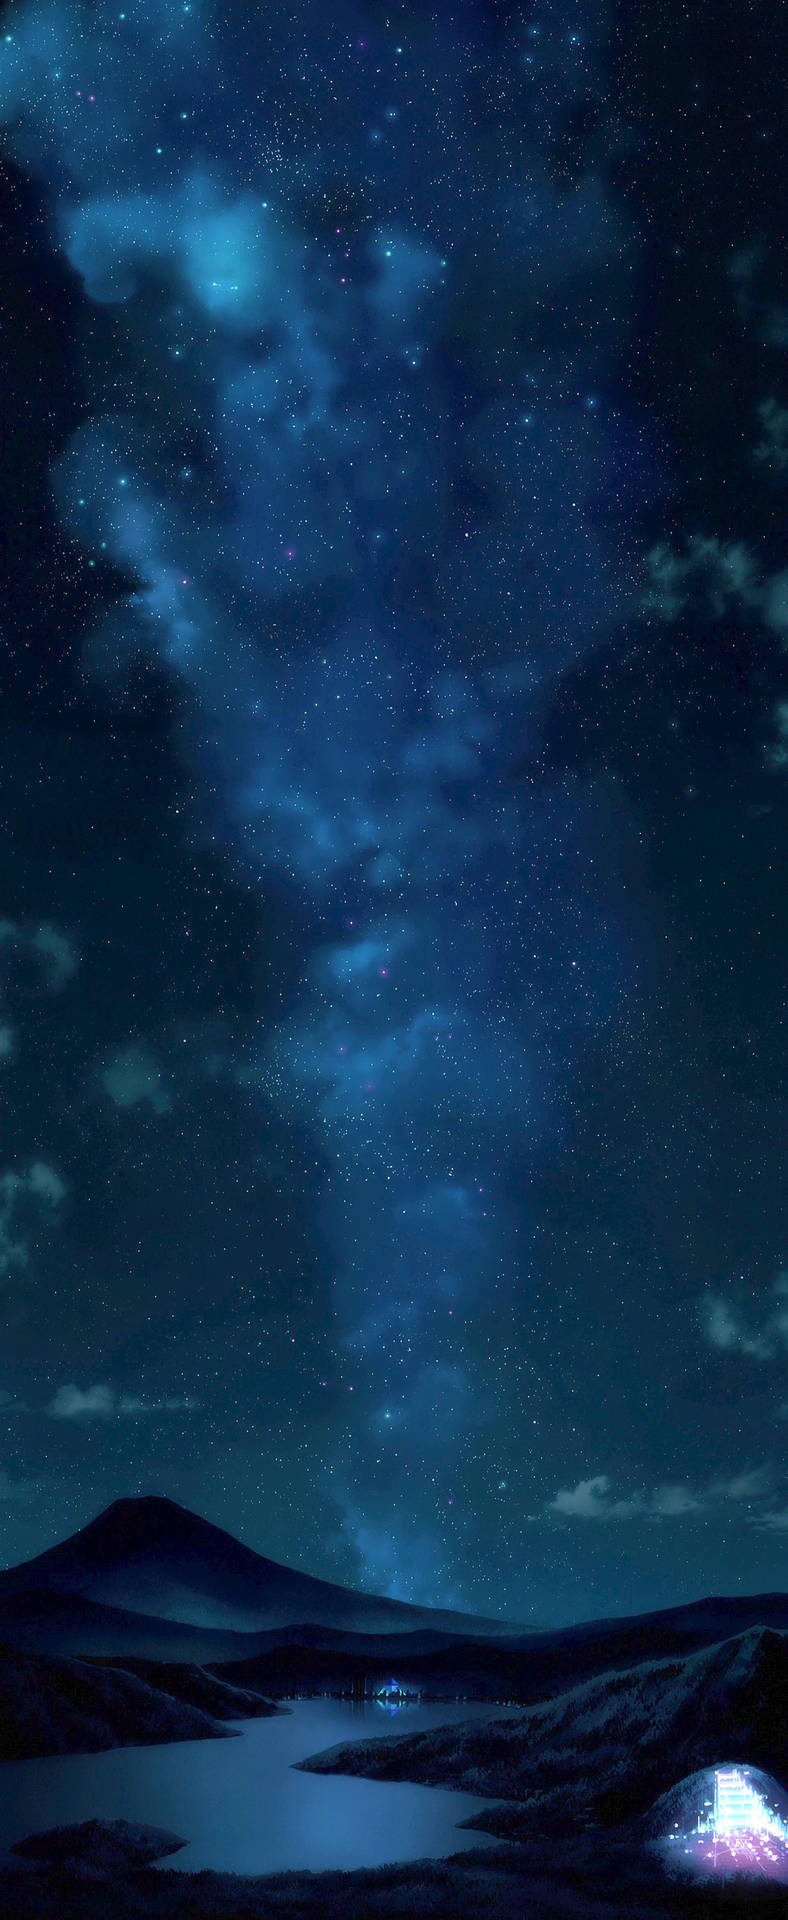 Et nat himmel med stjerner og en sø reflekterende sit lys Wallpaper